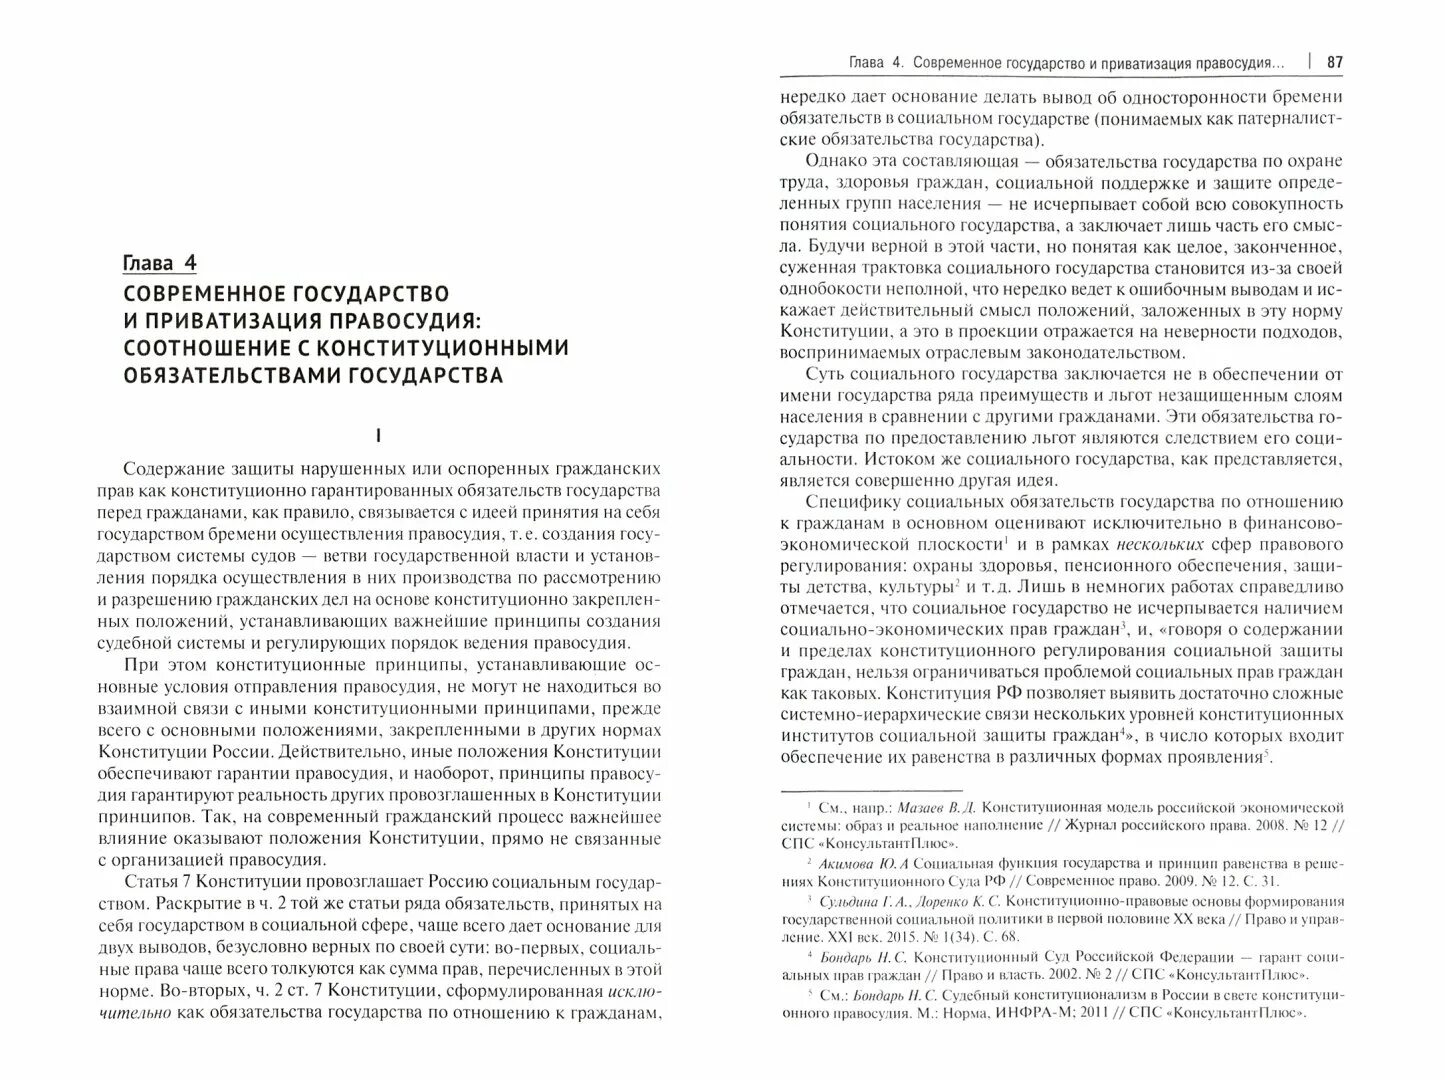 Приватизация книги. Система конституционных прав и свобод в РФ.